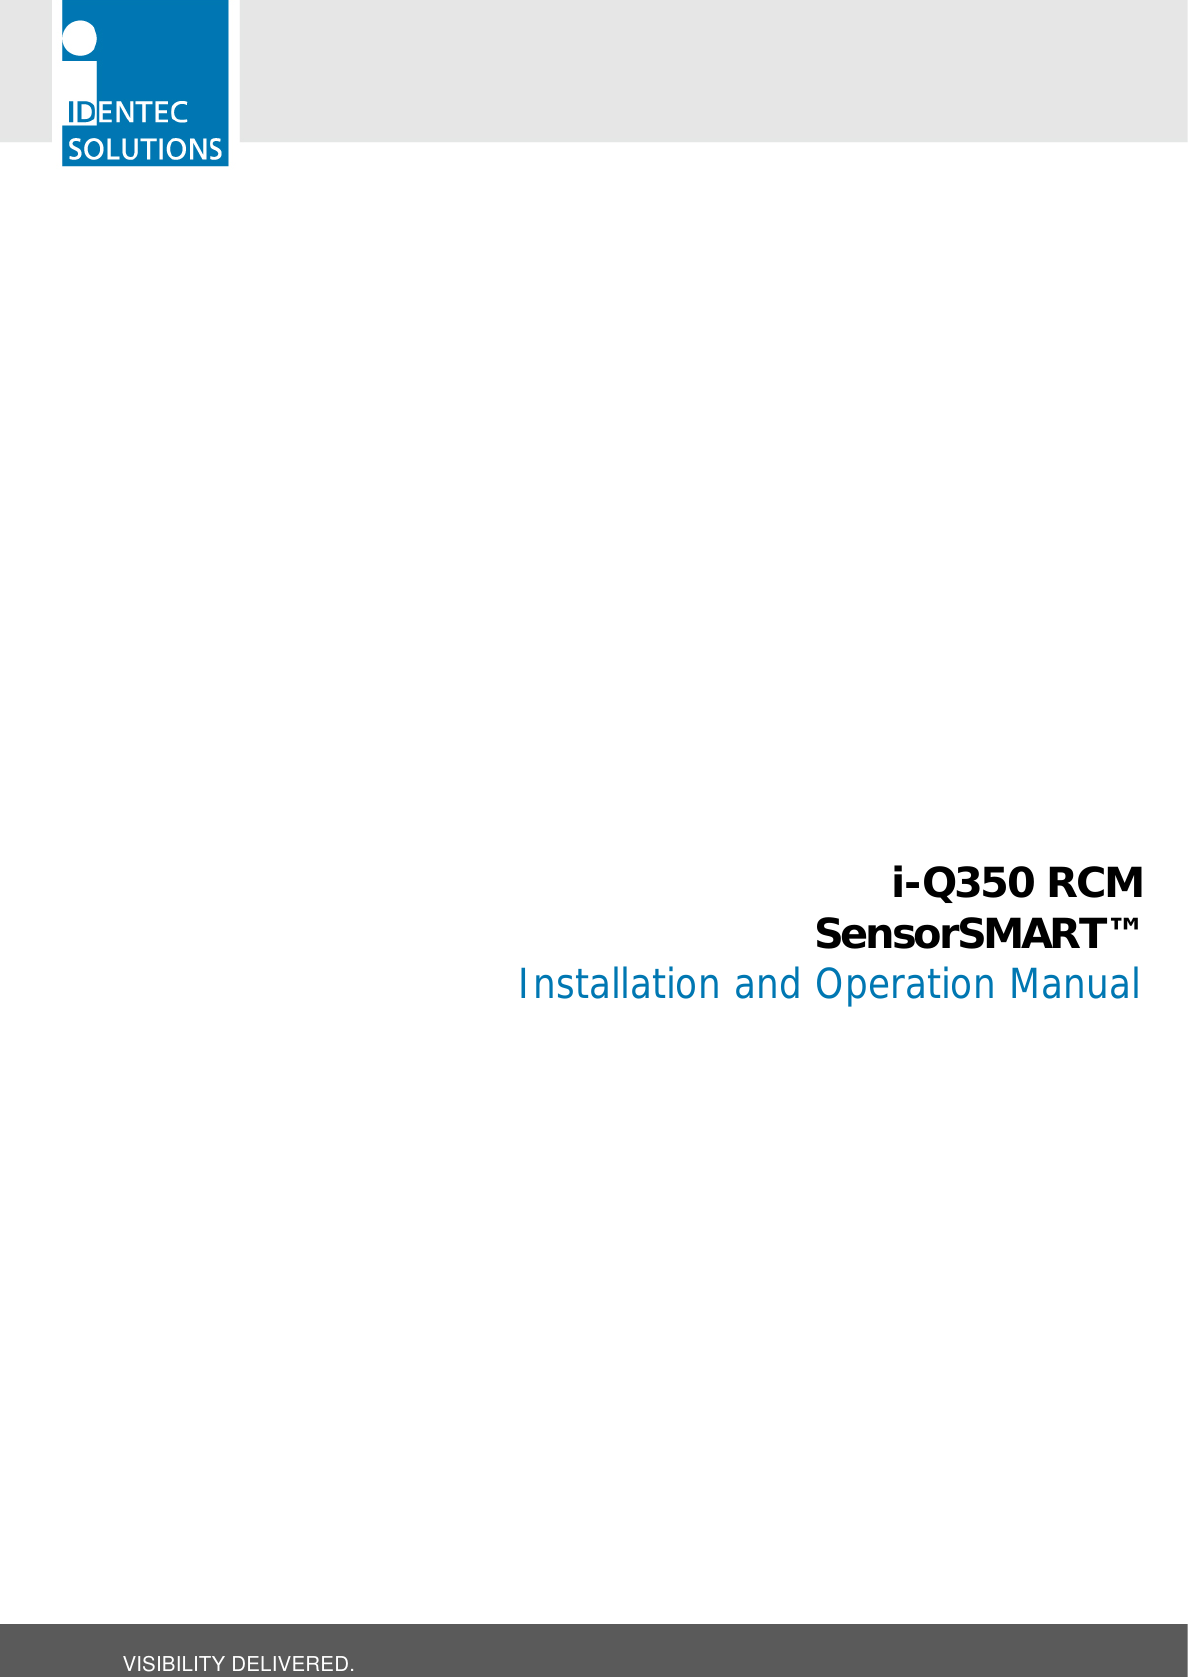  VISIBILITY DELIVERED.                        i-Q350 RCM SensorSMART™ Installation and Operation Manual 